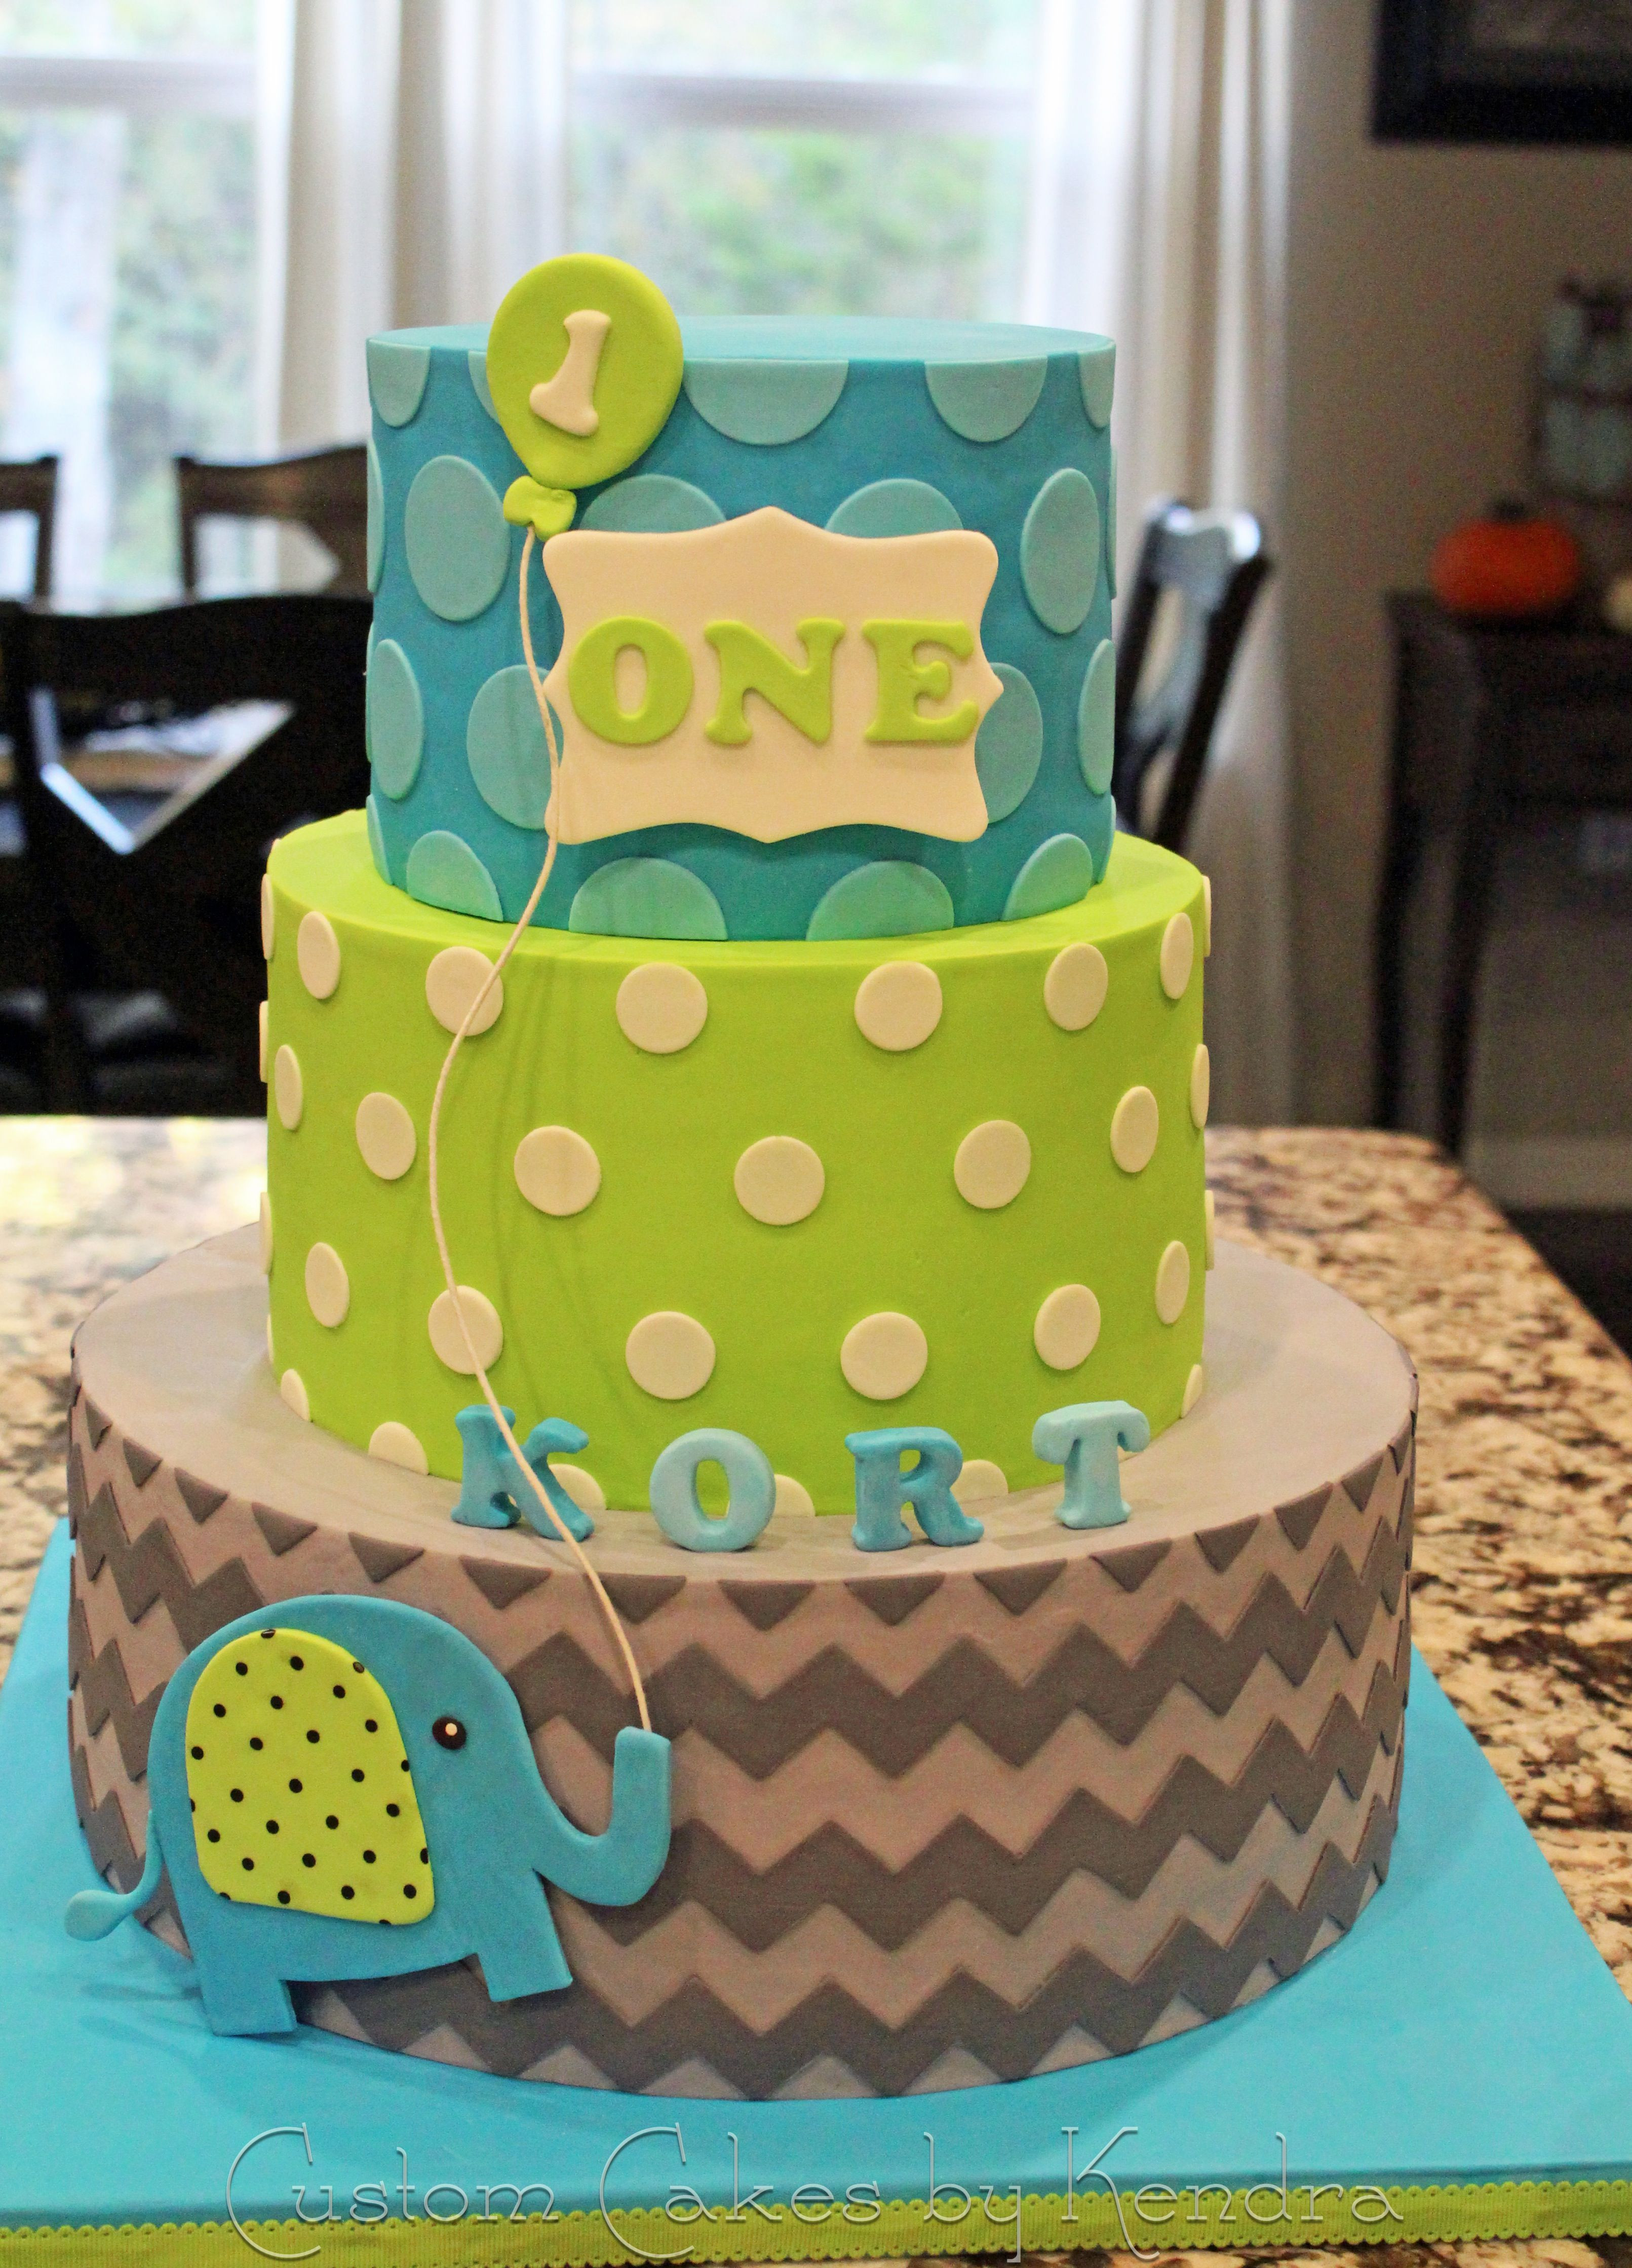 Babys 1St Birthday Cake
 KORT S FIRST BIRTHDAY Miracle baby s first birthday cake